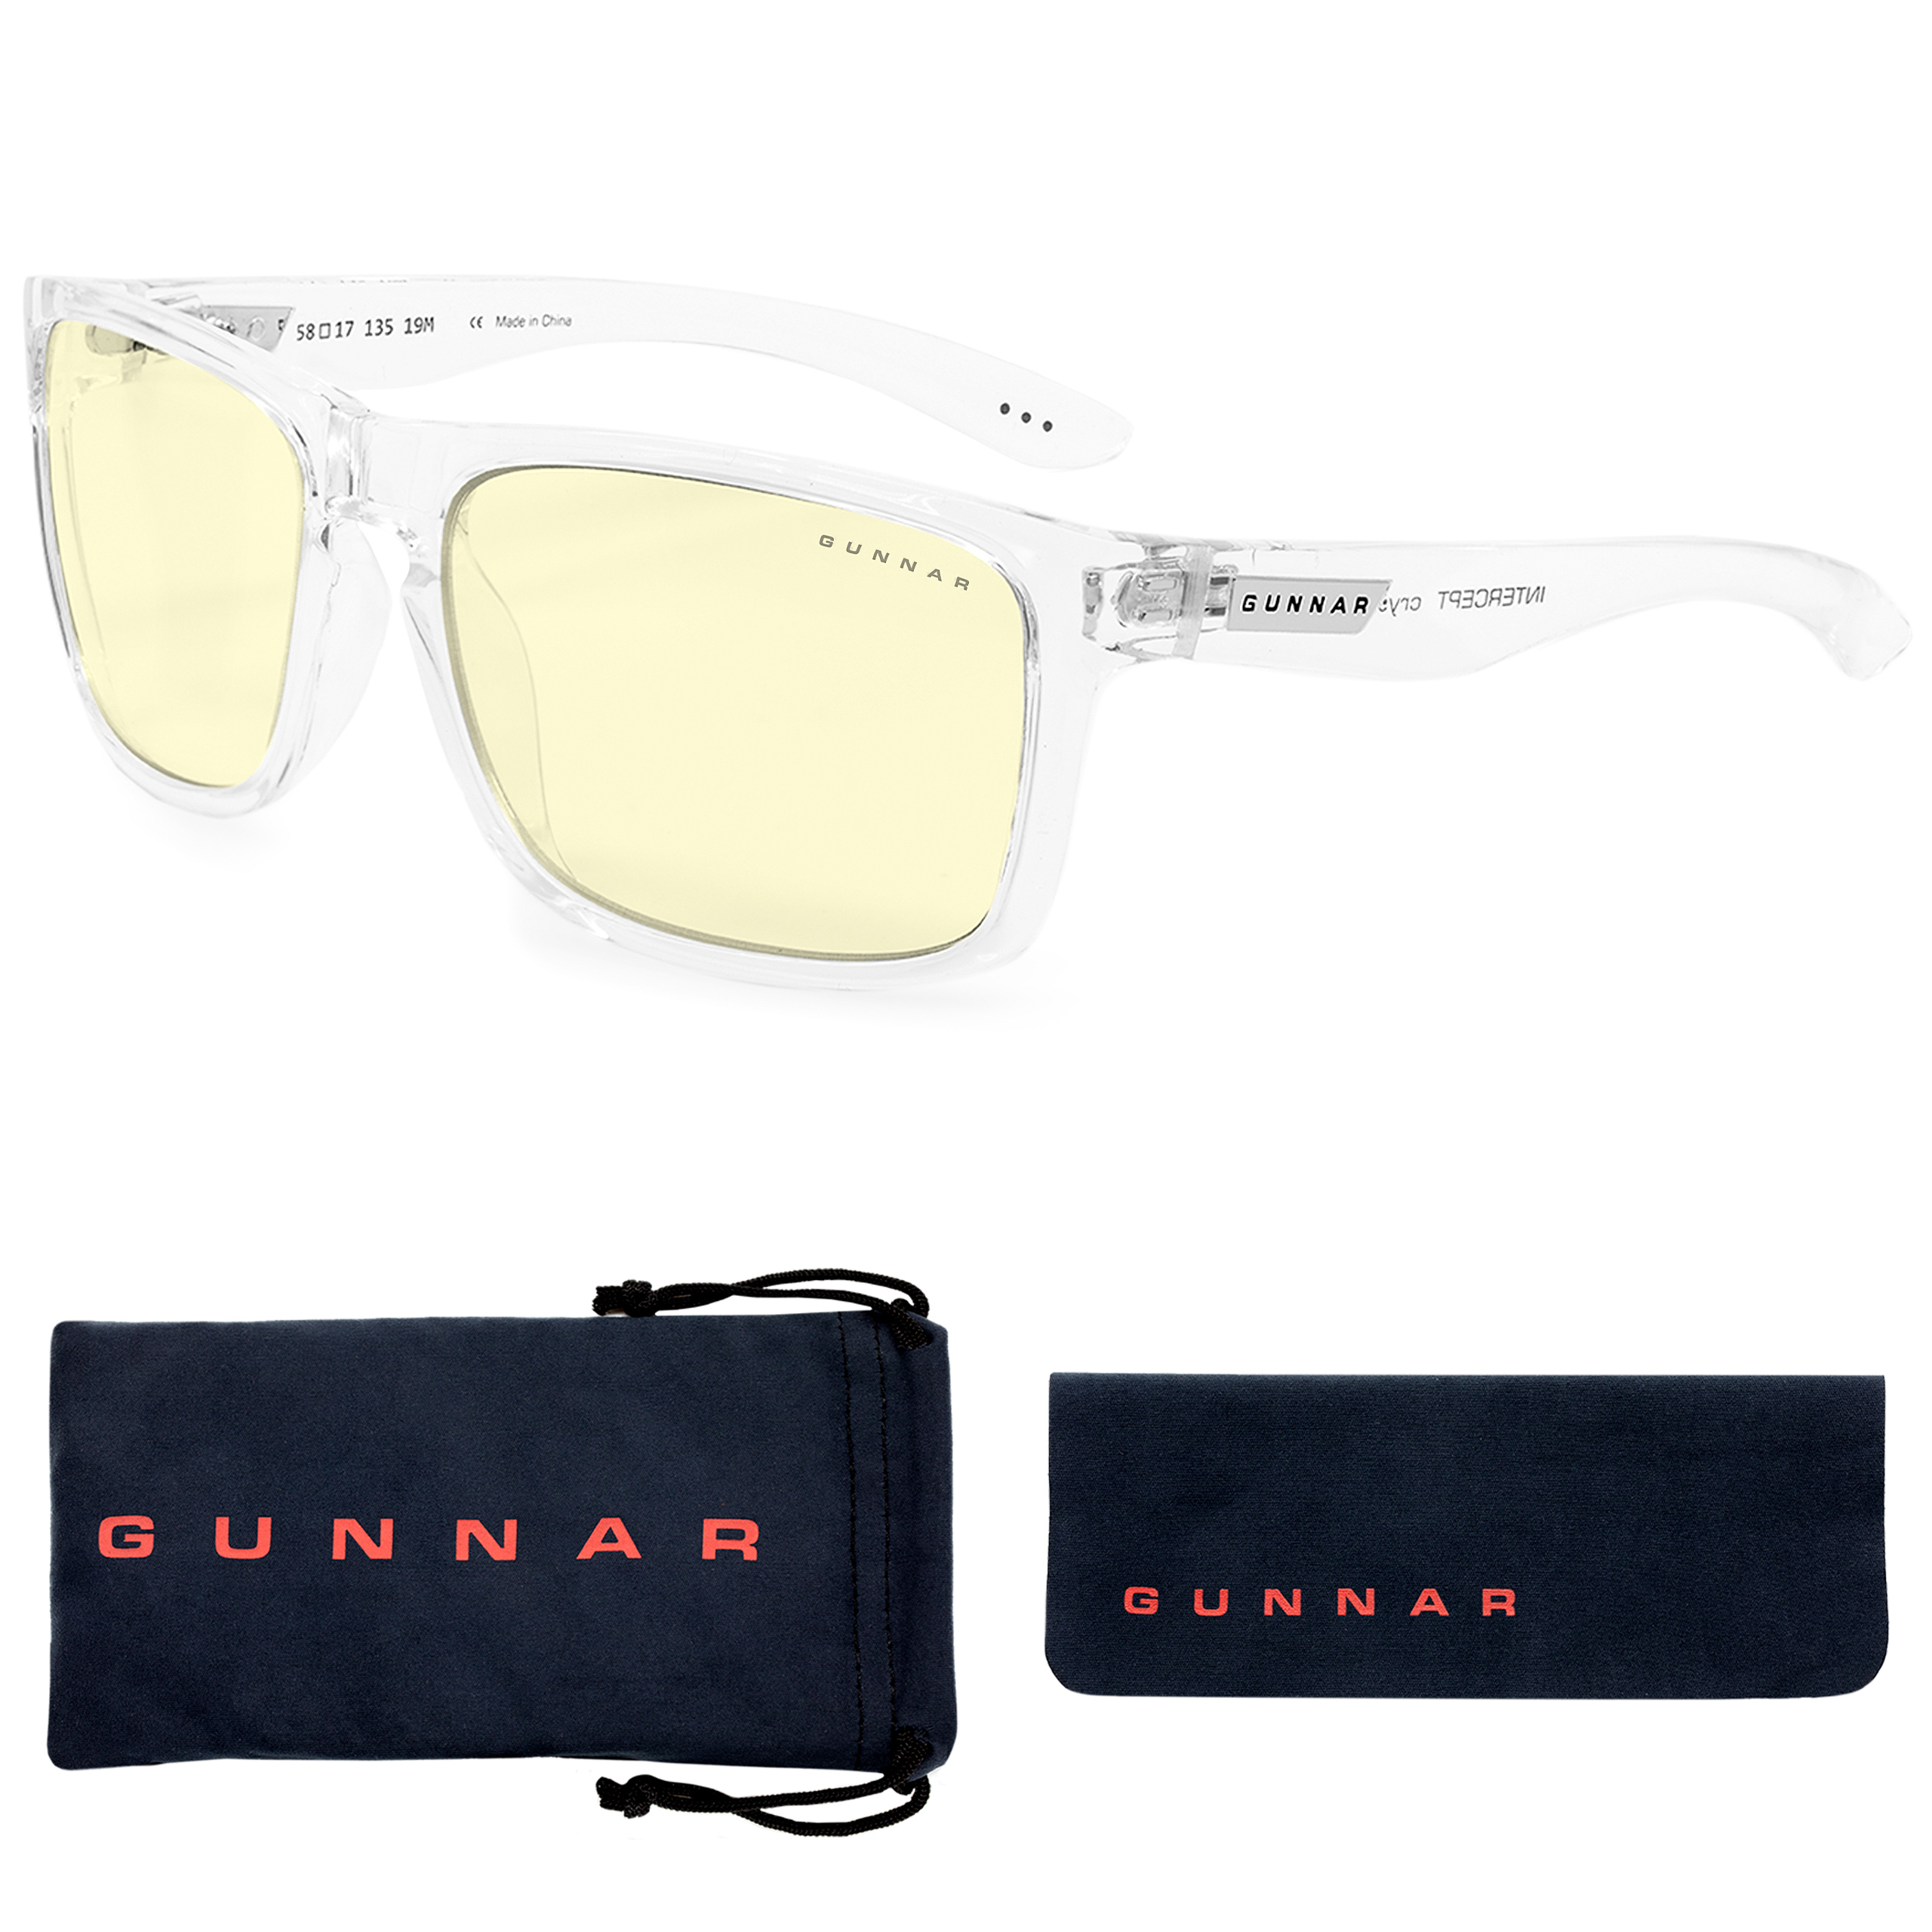 GUNNAR Intercept, UV-Schutz, Tortoise Amber Gaming Blaulichtfilter, Rahmen, Brille Premium, Tönung